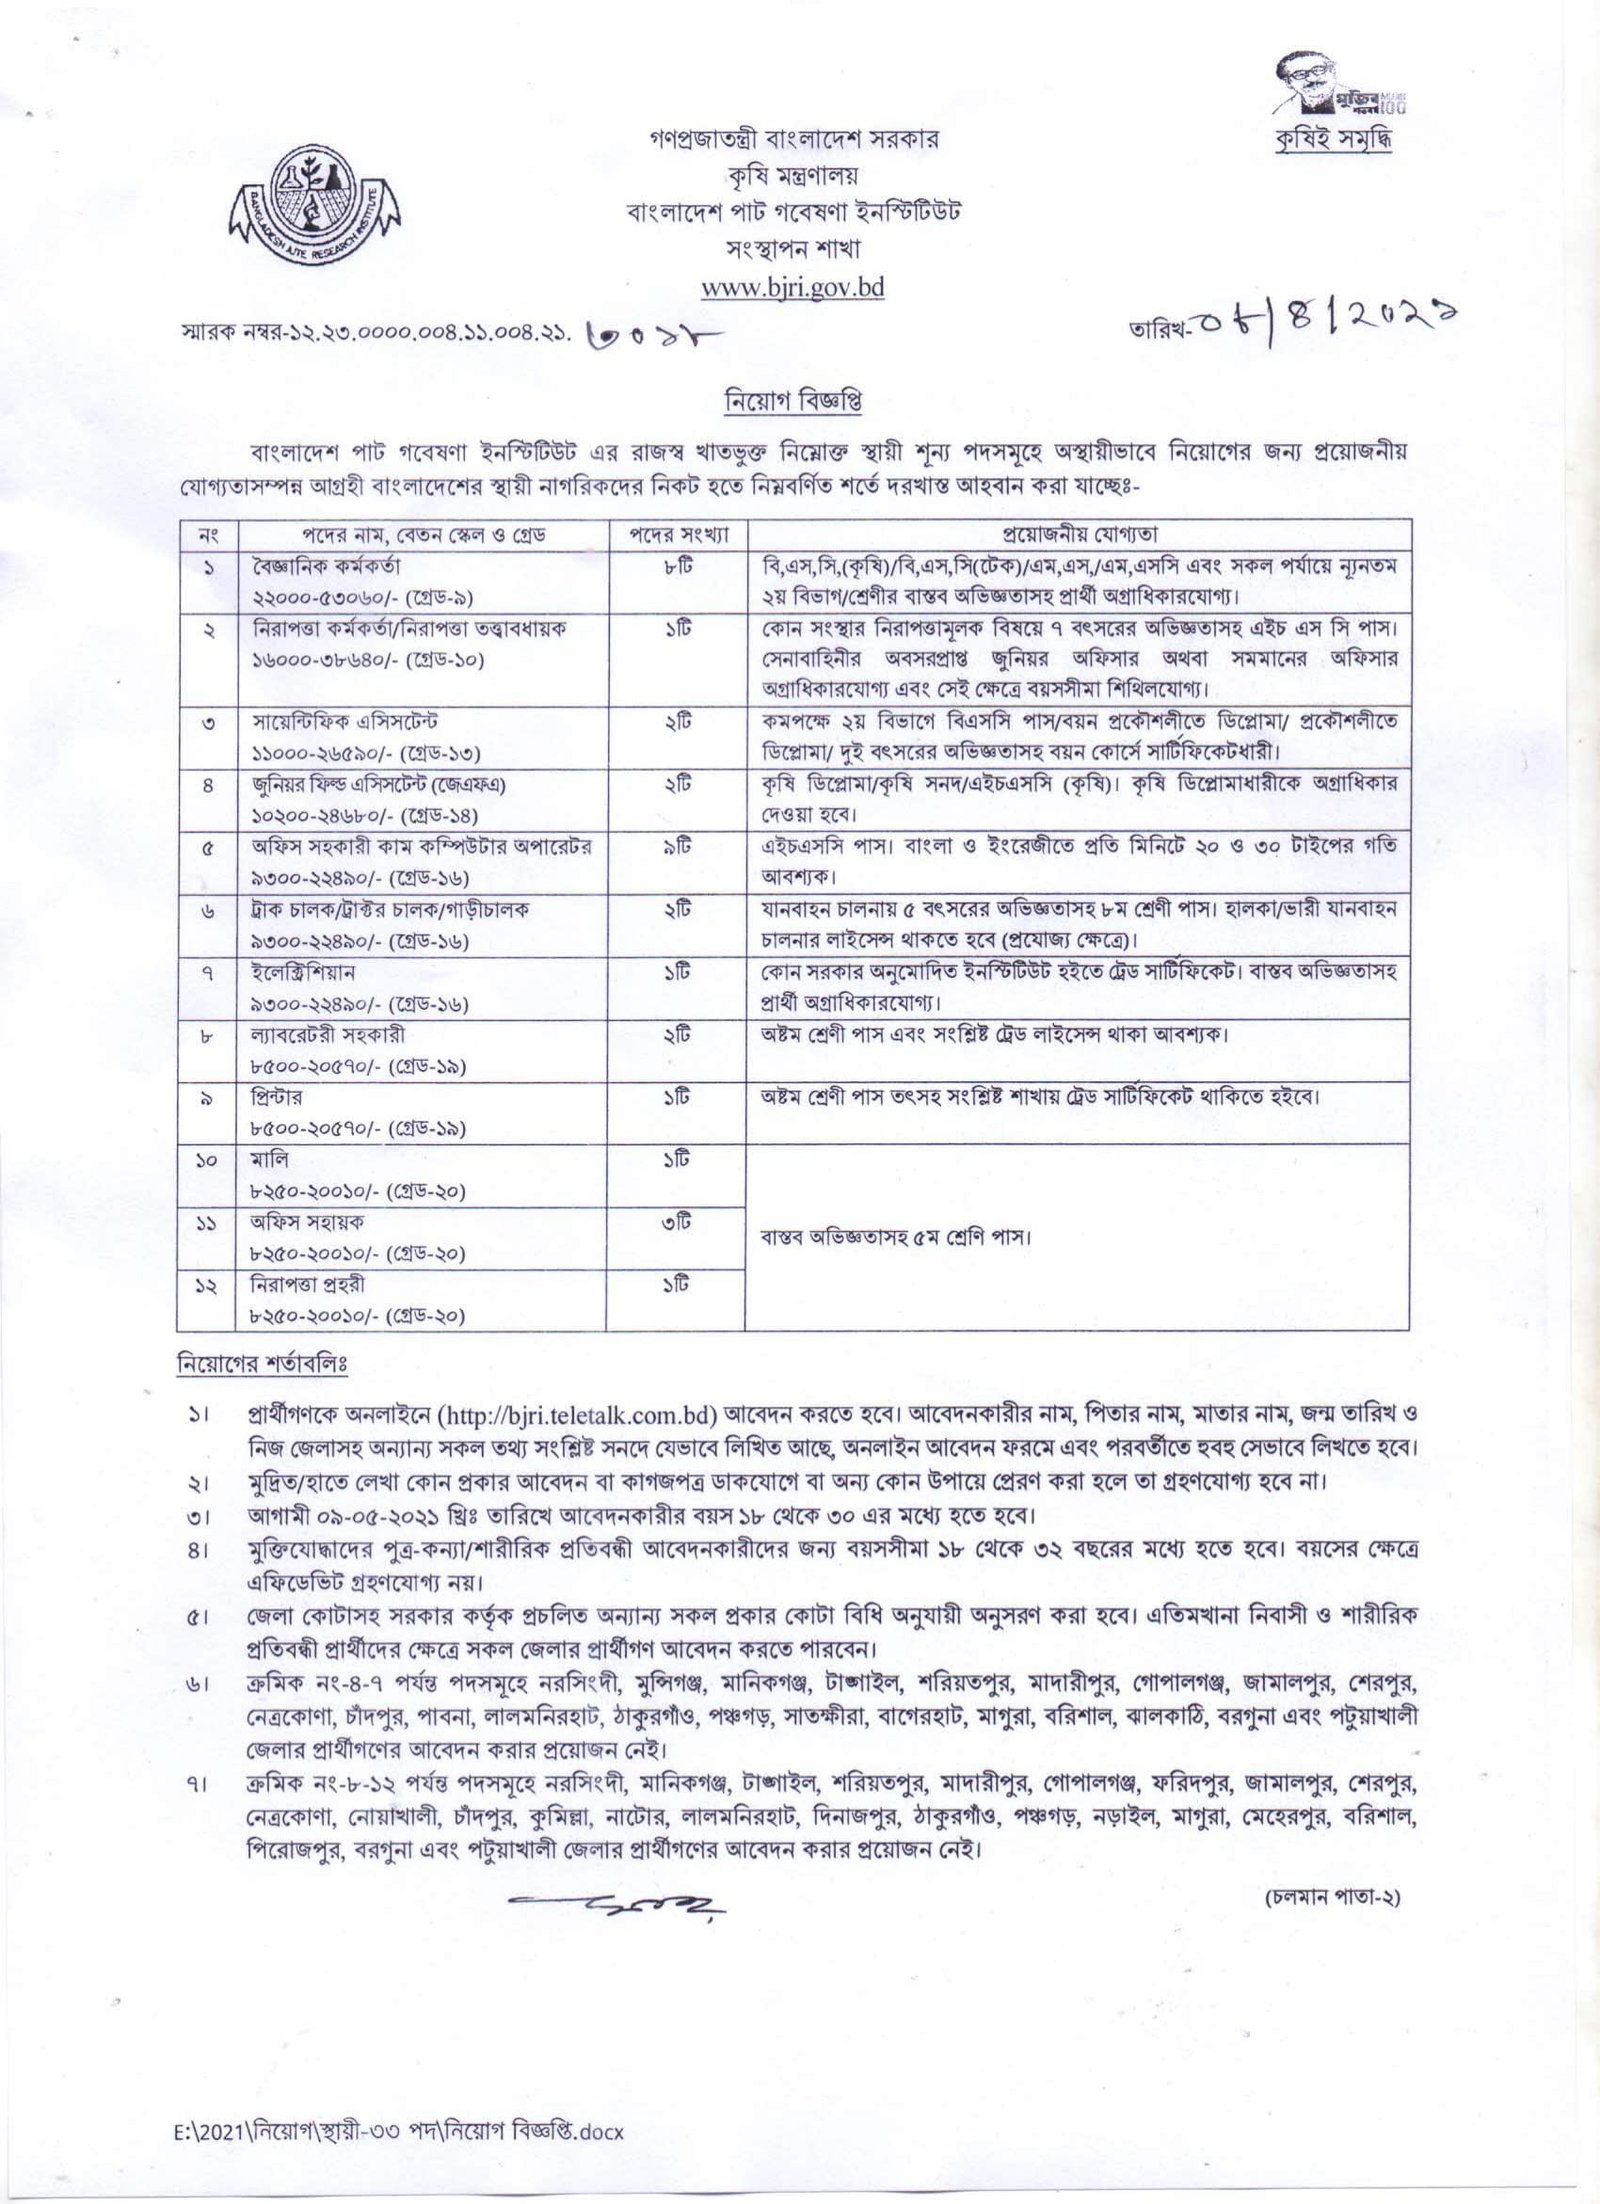 Bangladesh Jute Research Institute BJRI Job Circular 2021 Image & PDF Download